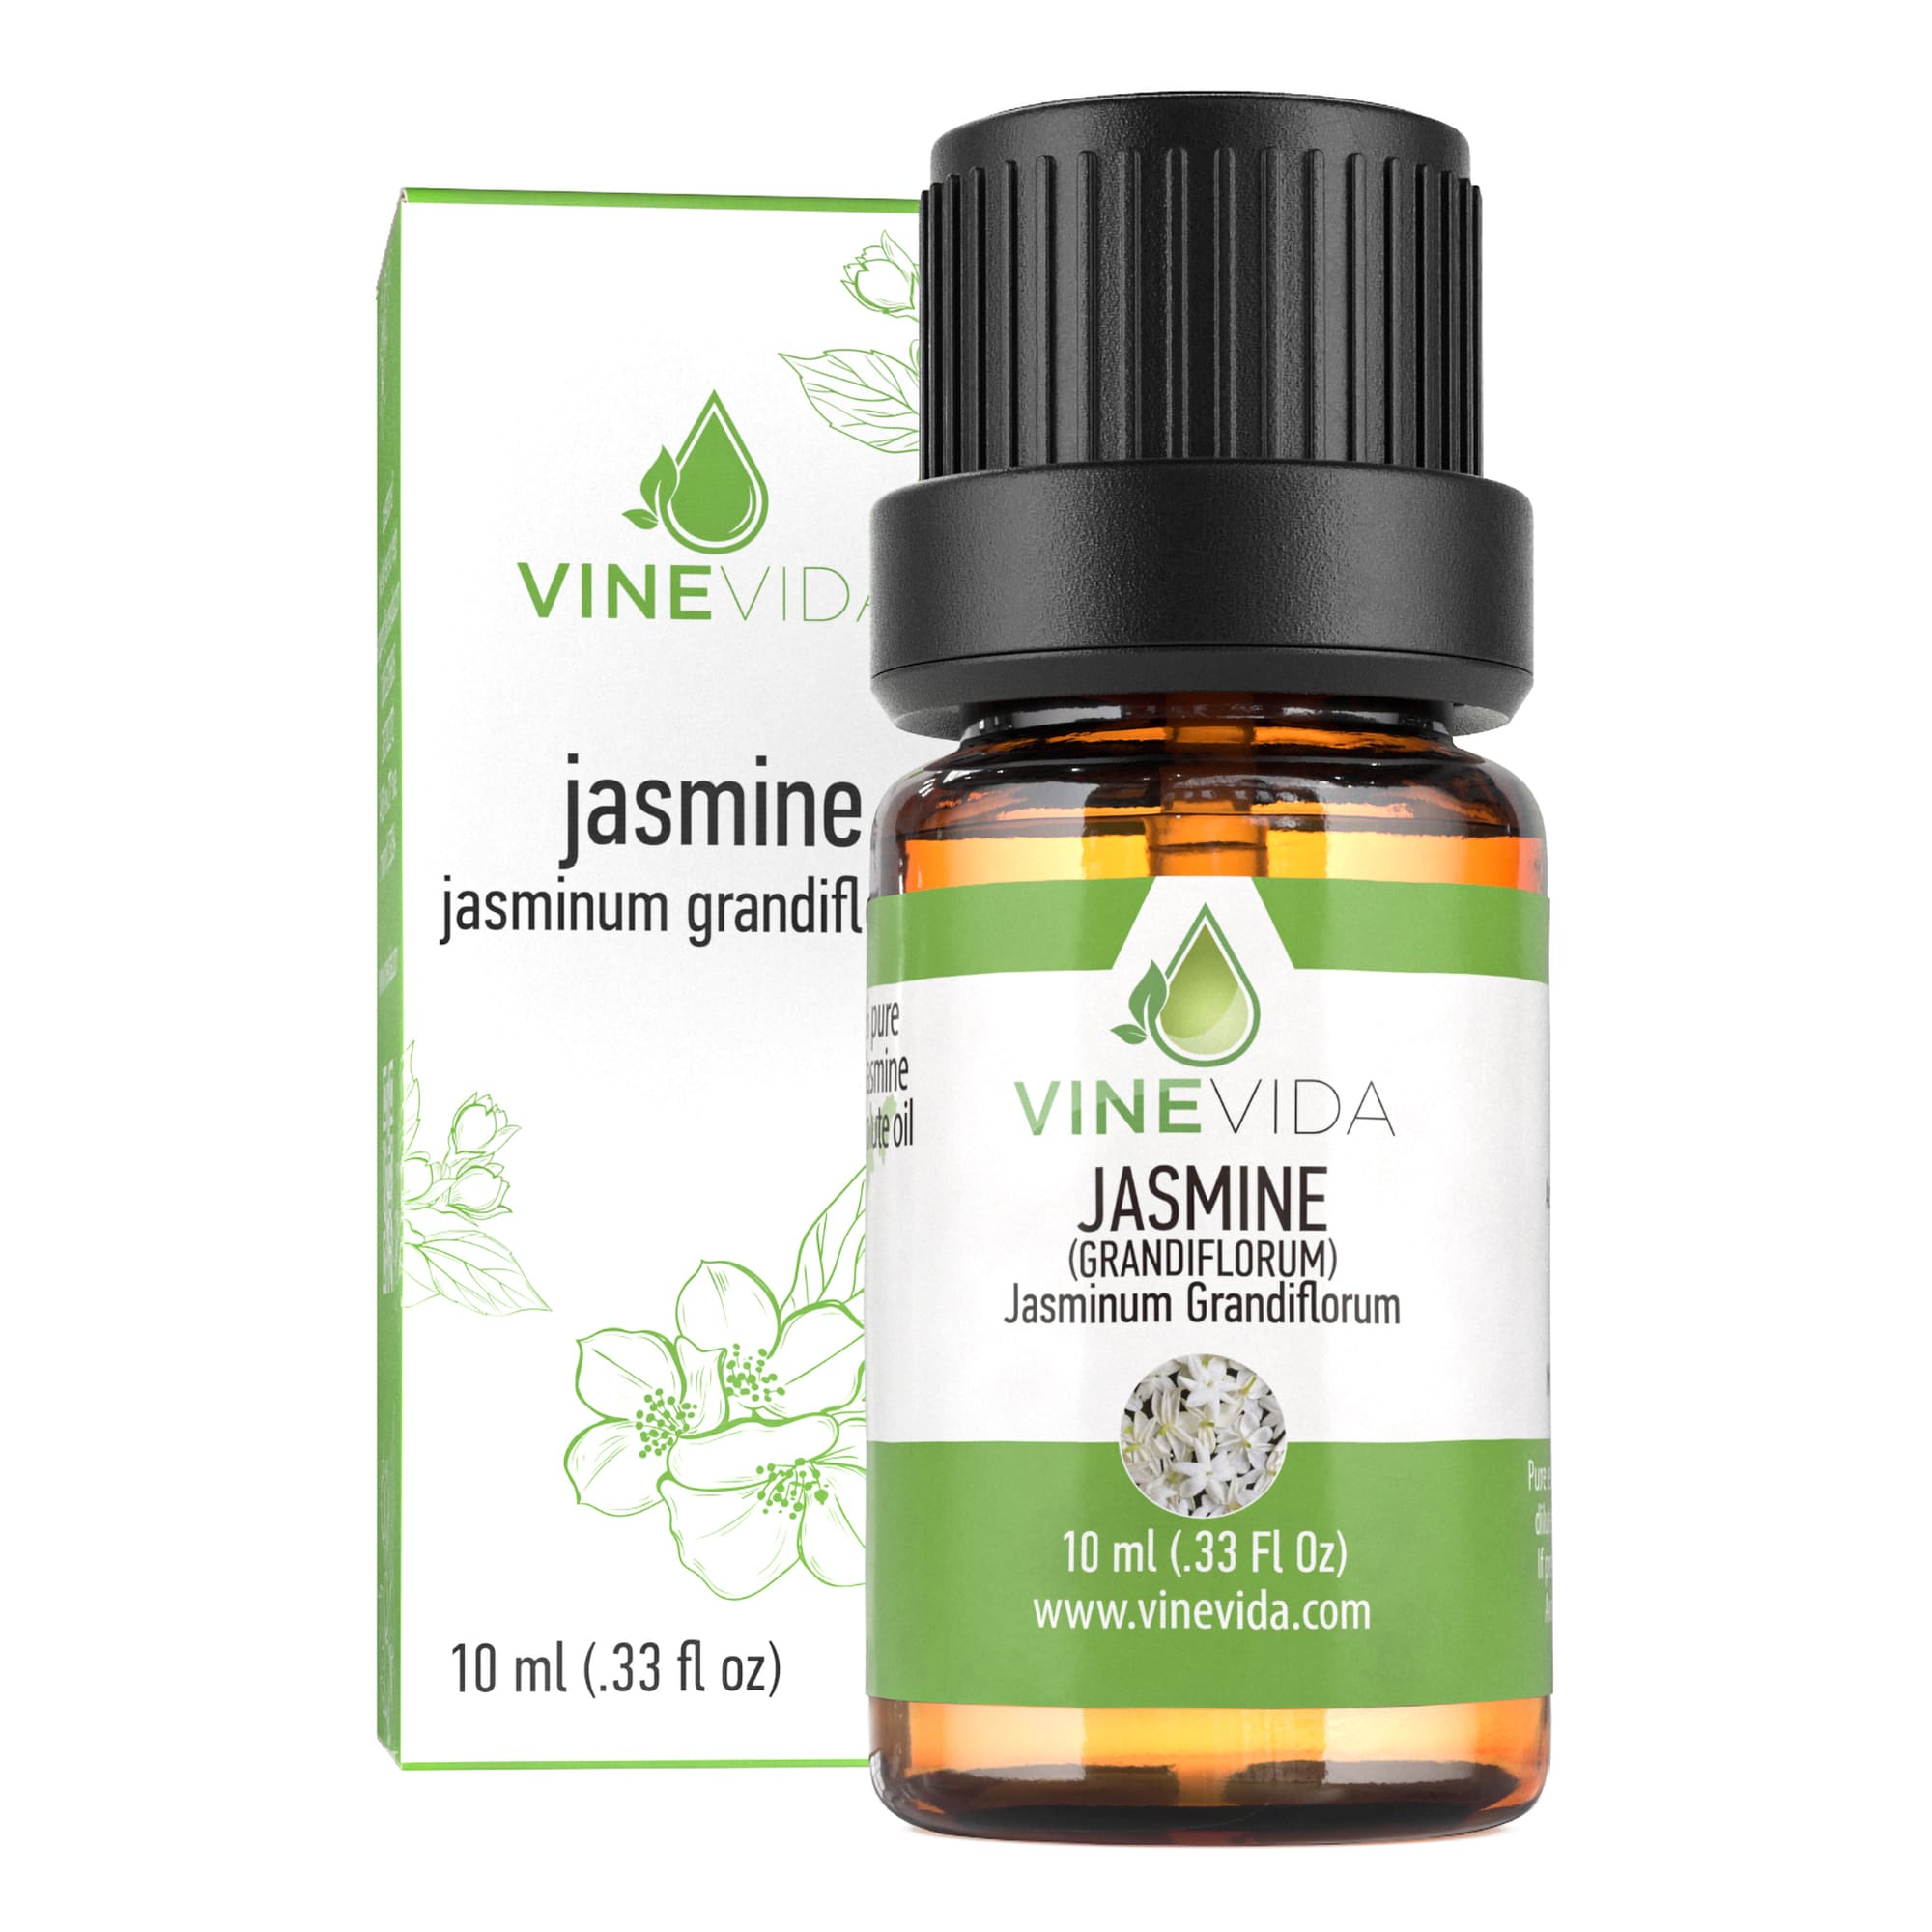 Jasmine Essential Oil, Benefits & Uses